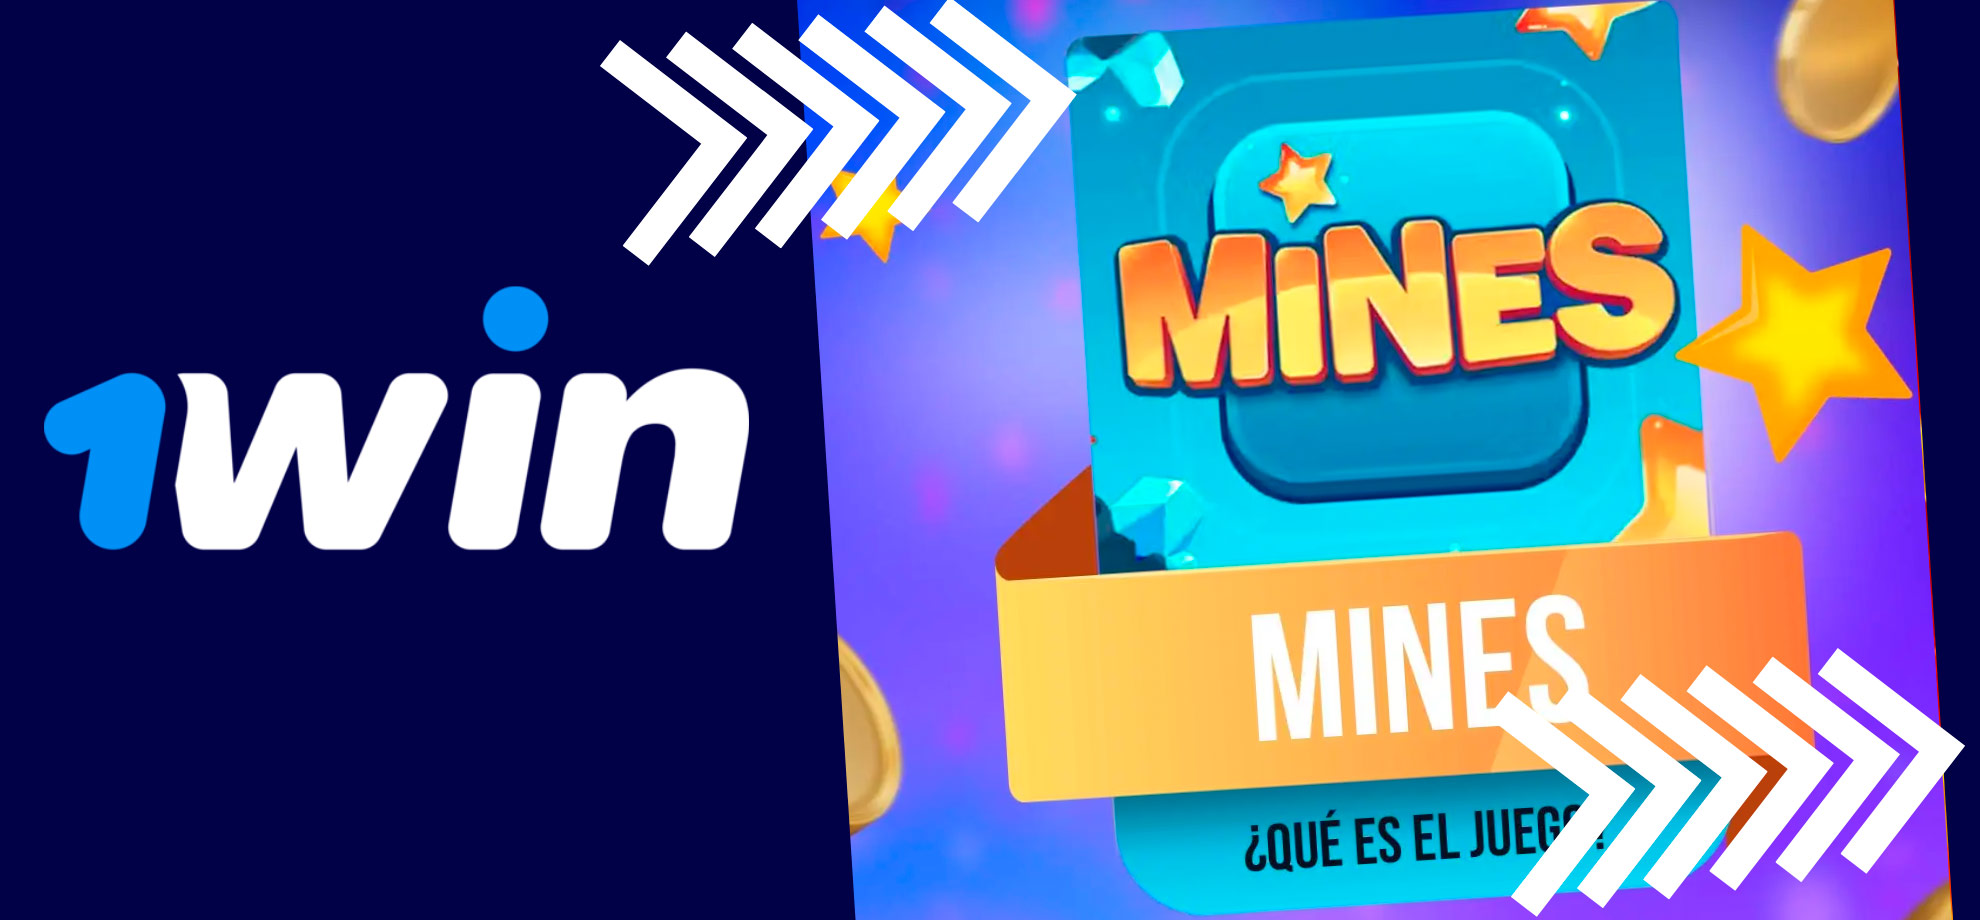 Conheça o clássico jogo de lógica 1win Mines e teste sua habilidade de contornar o campo minado